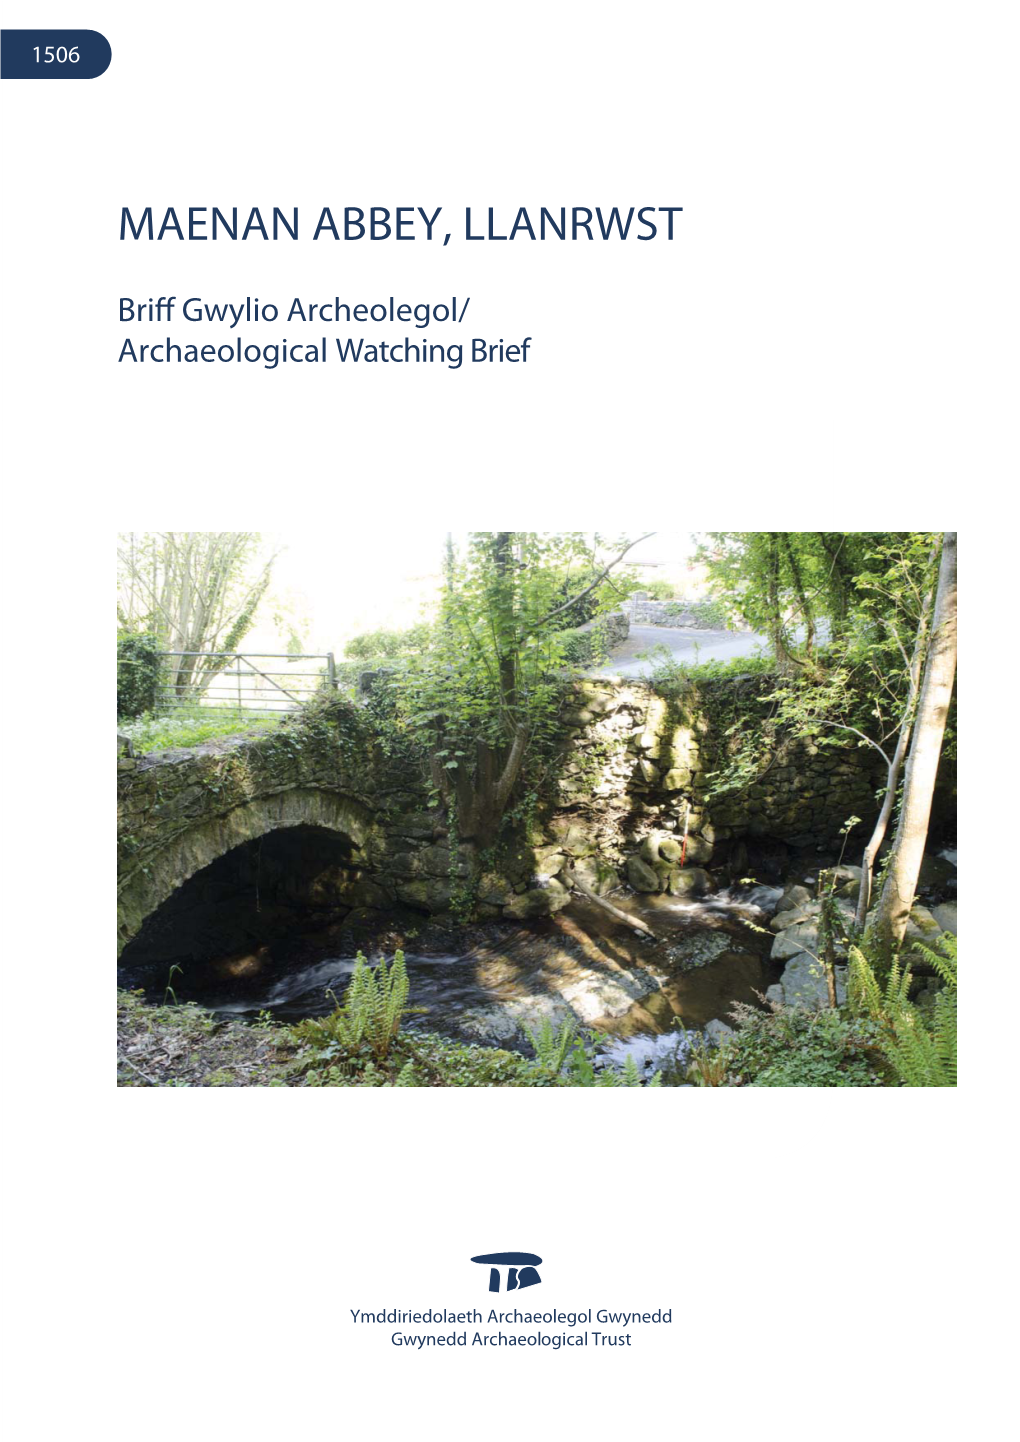 Maenan Abbey, Llanrwst